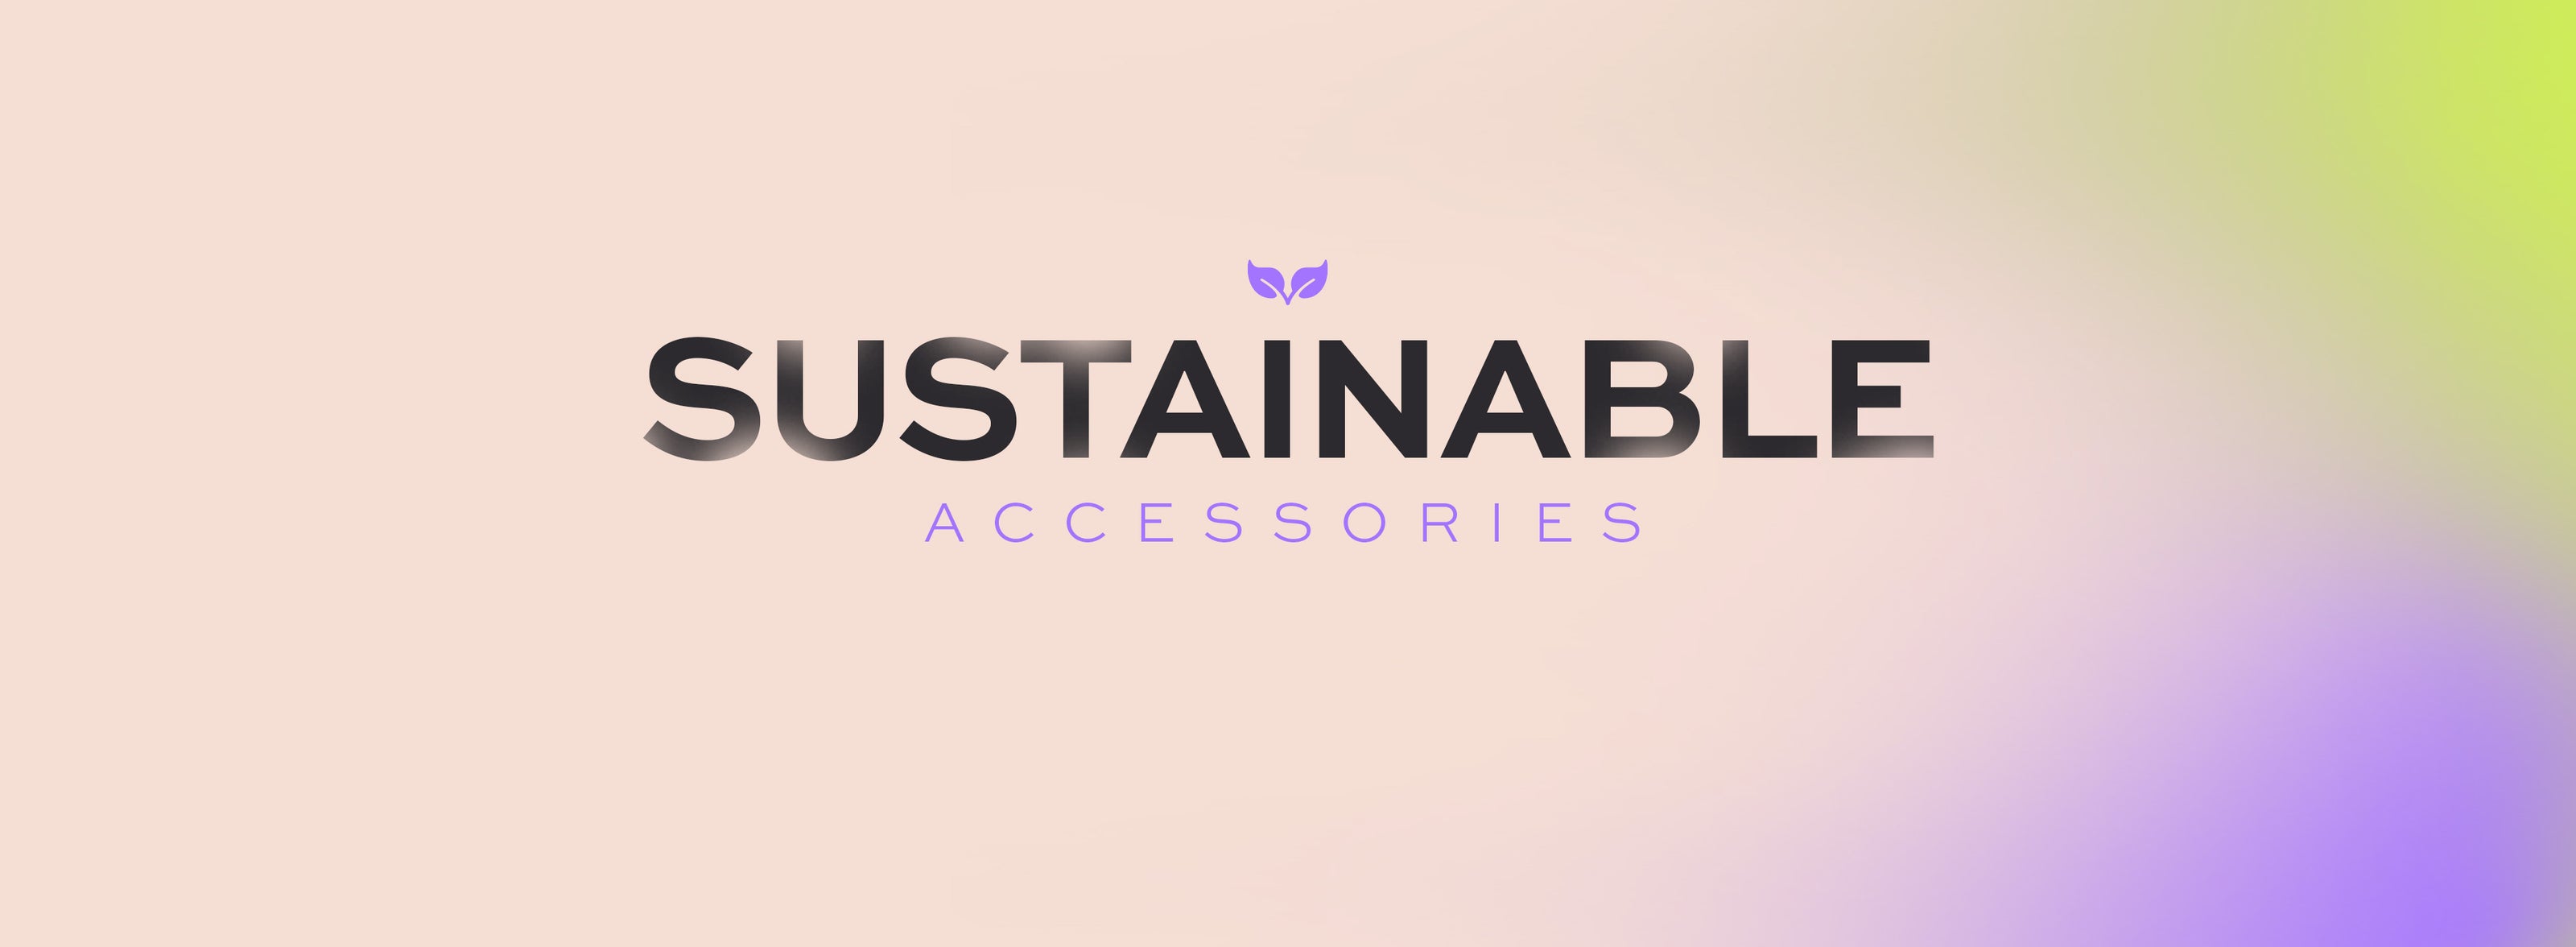 Nachhaltige Accessoires